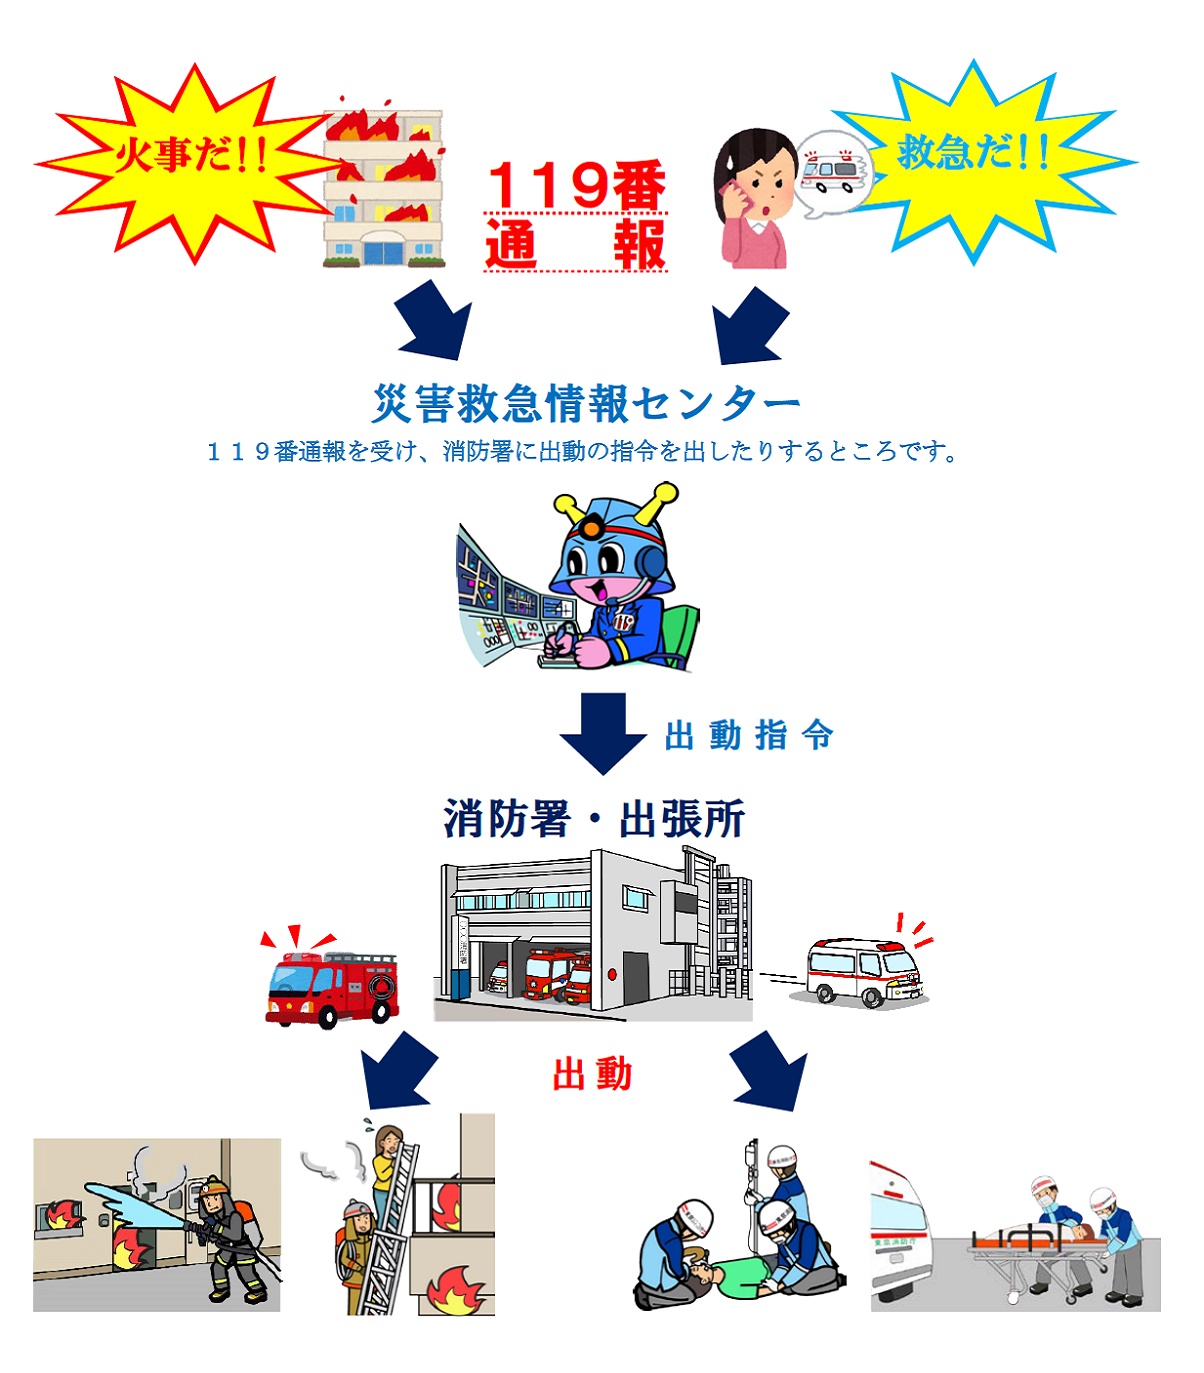 東京消防庁 安全 安心情報 トピックス １１９番通報のしくみ